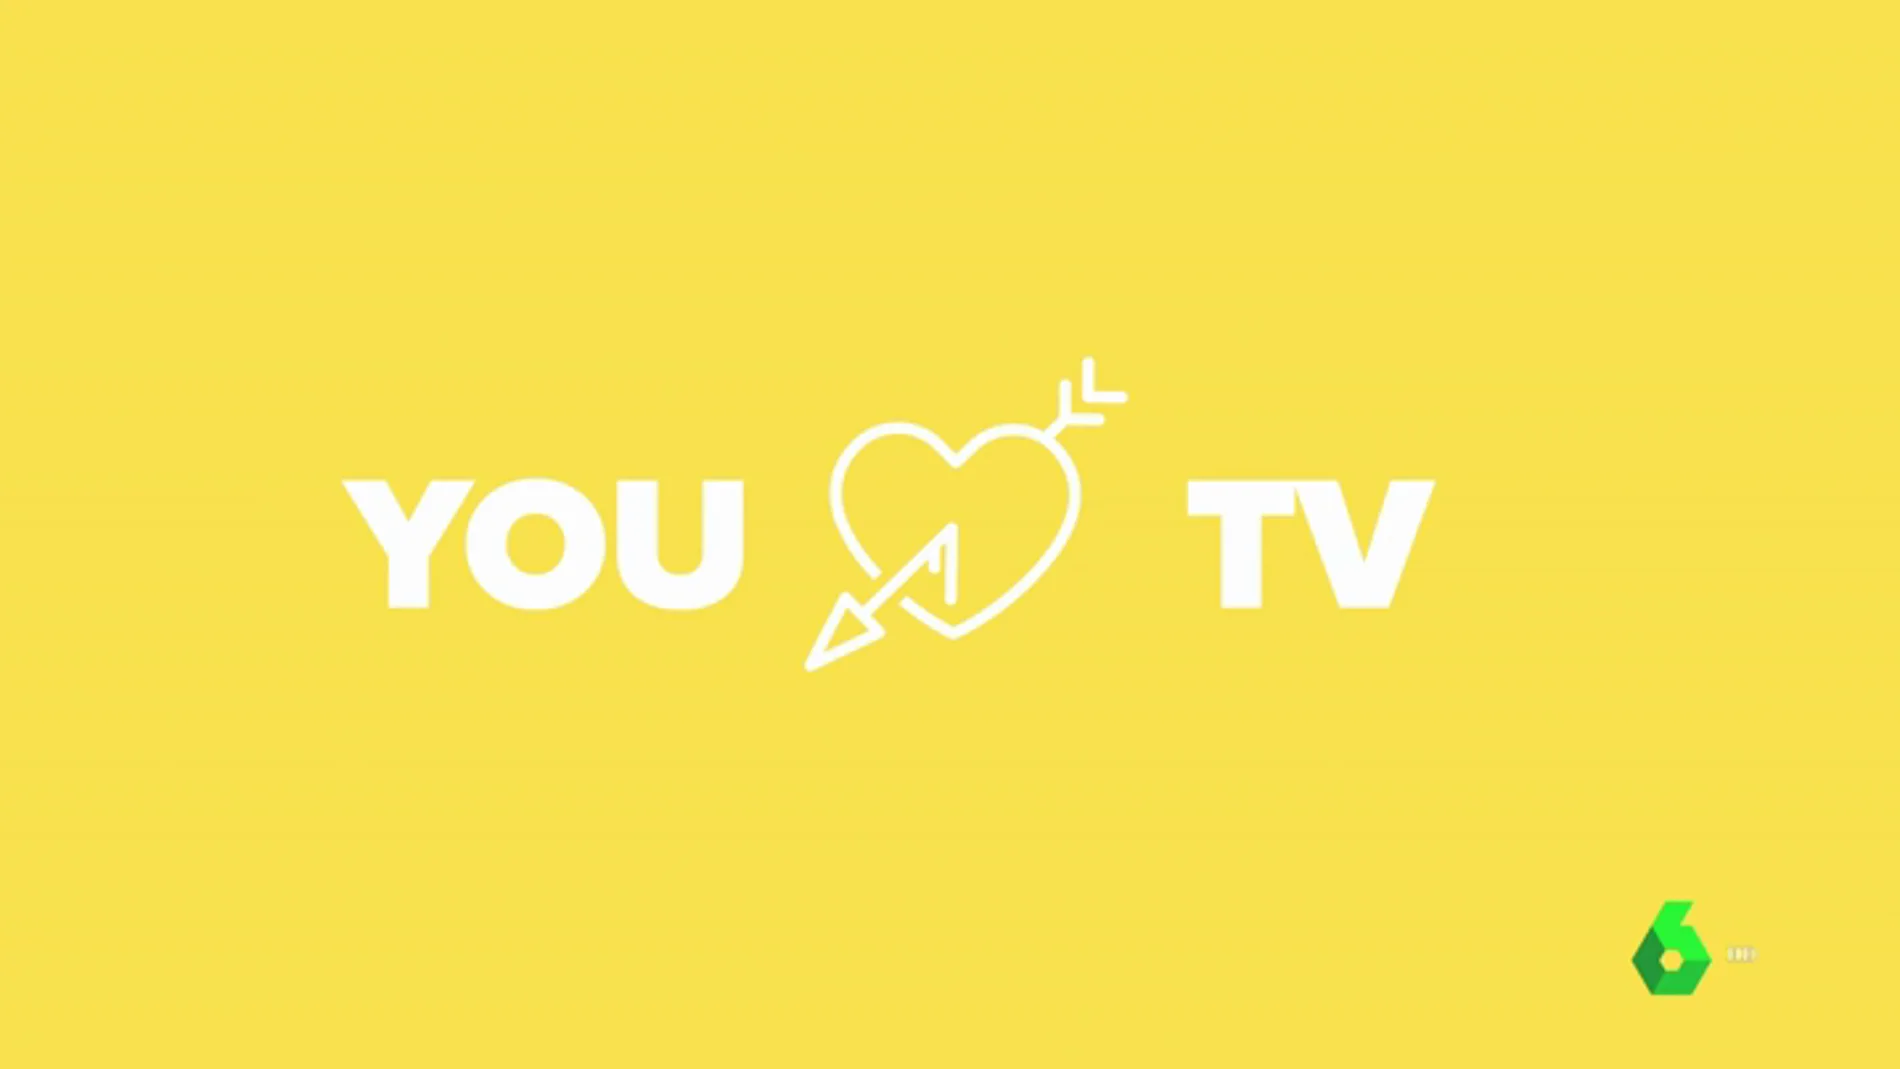 El 14 de junio nace 'Loves TV', la plataforma conjunta de contenidos en abierto